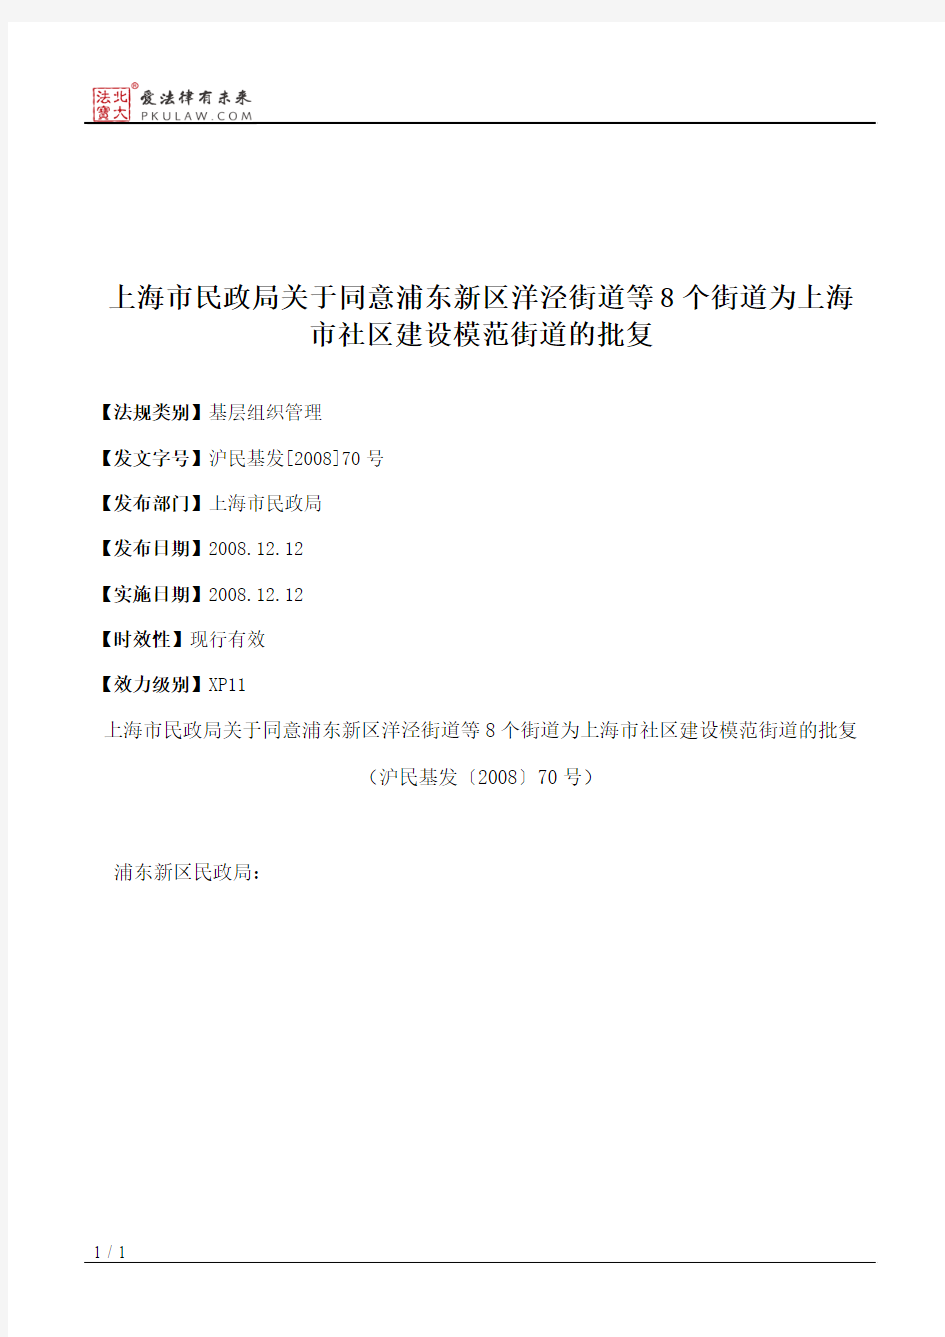 上海市民政局关于同意浦东新区洋泾街道等8个街道为上海市社区建